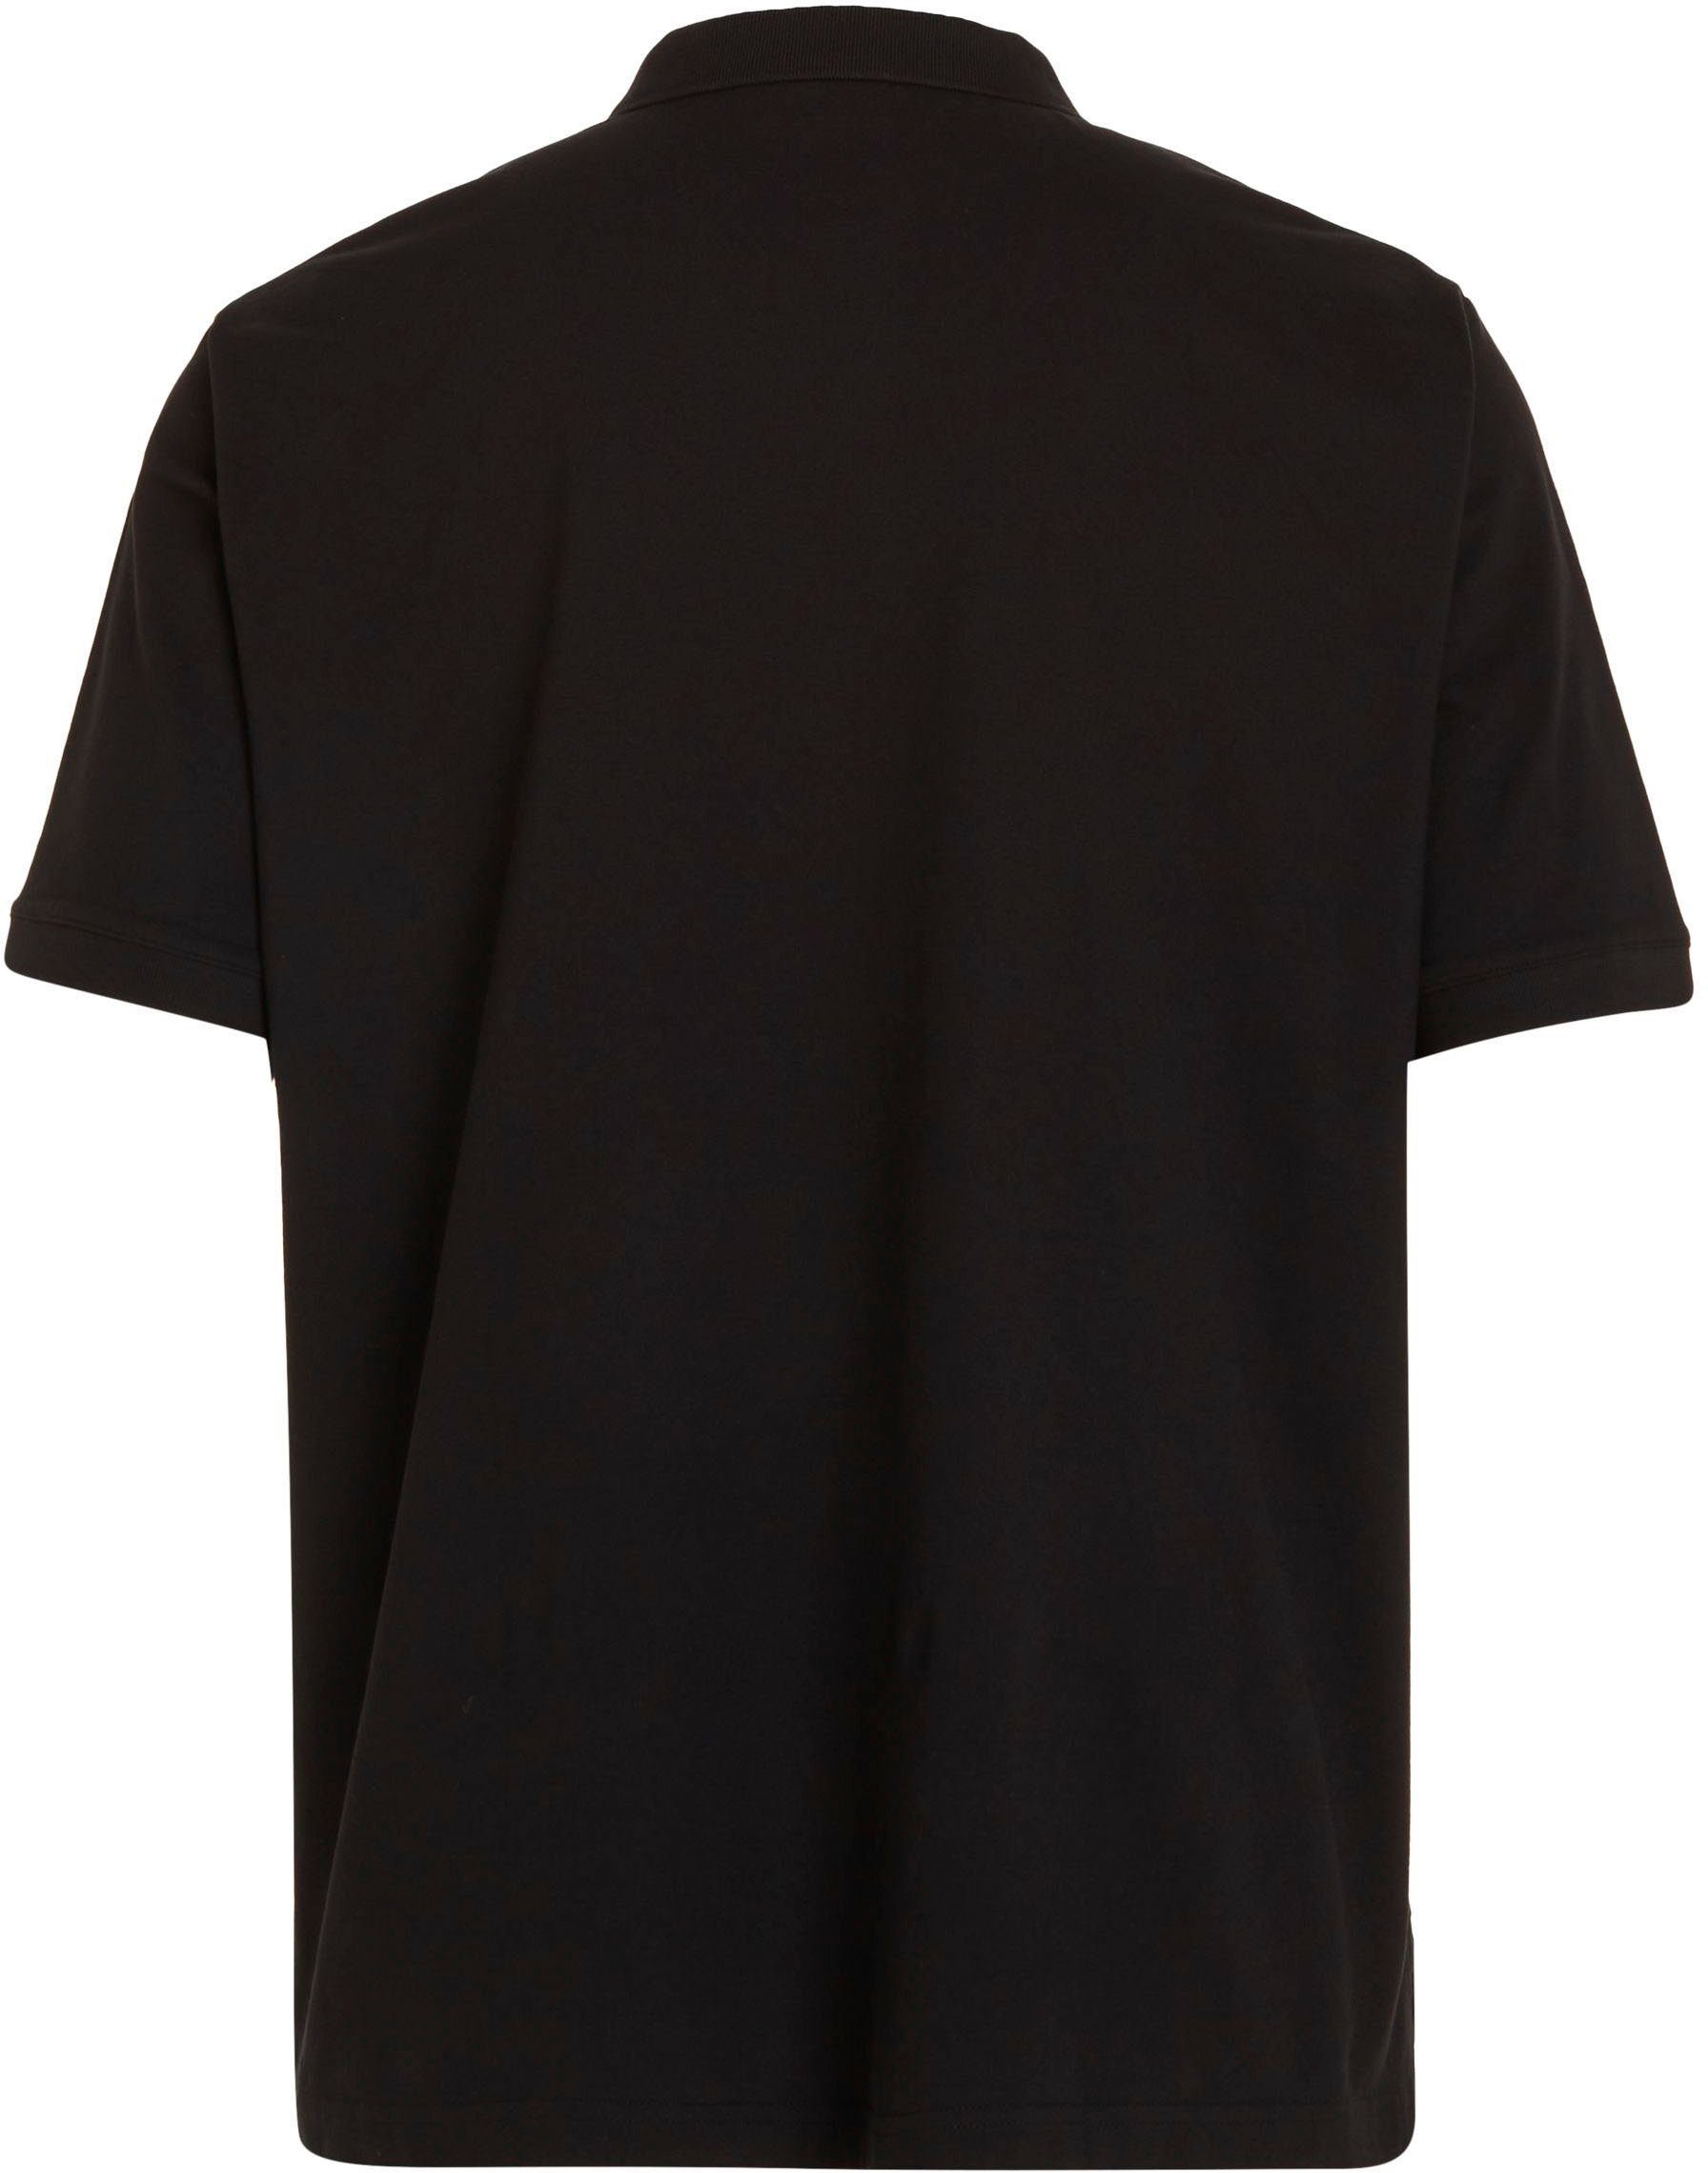 schwarz Poloshirt Calvin Big&Tall Klein Polokragen mit